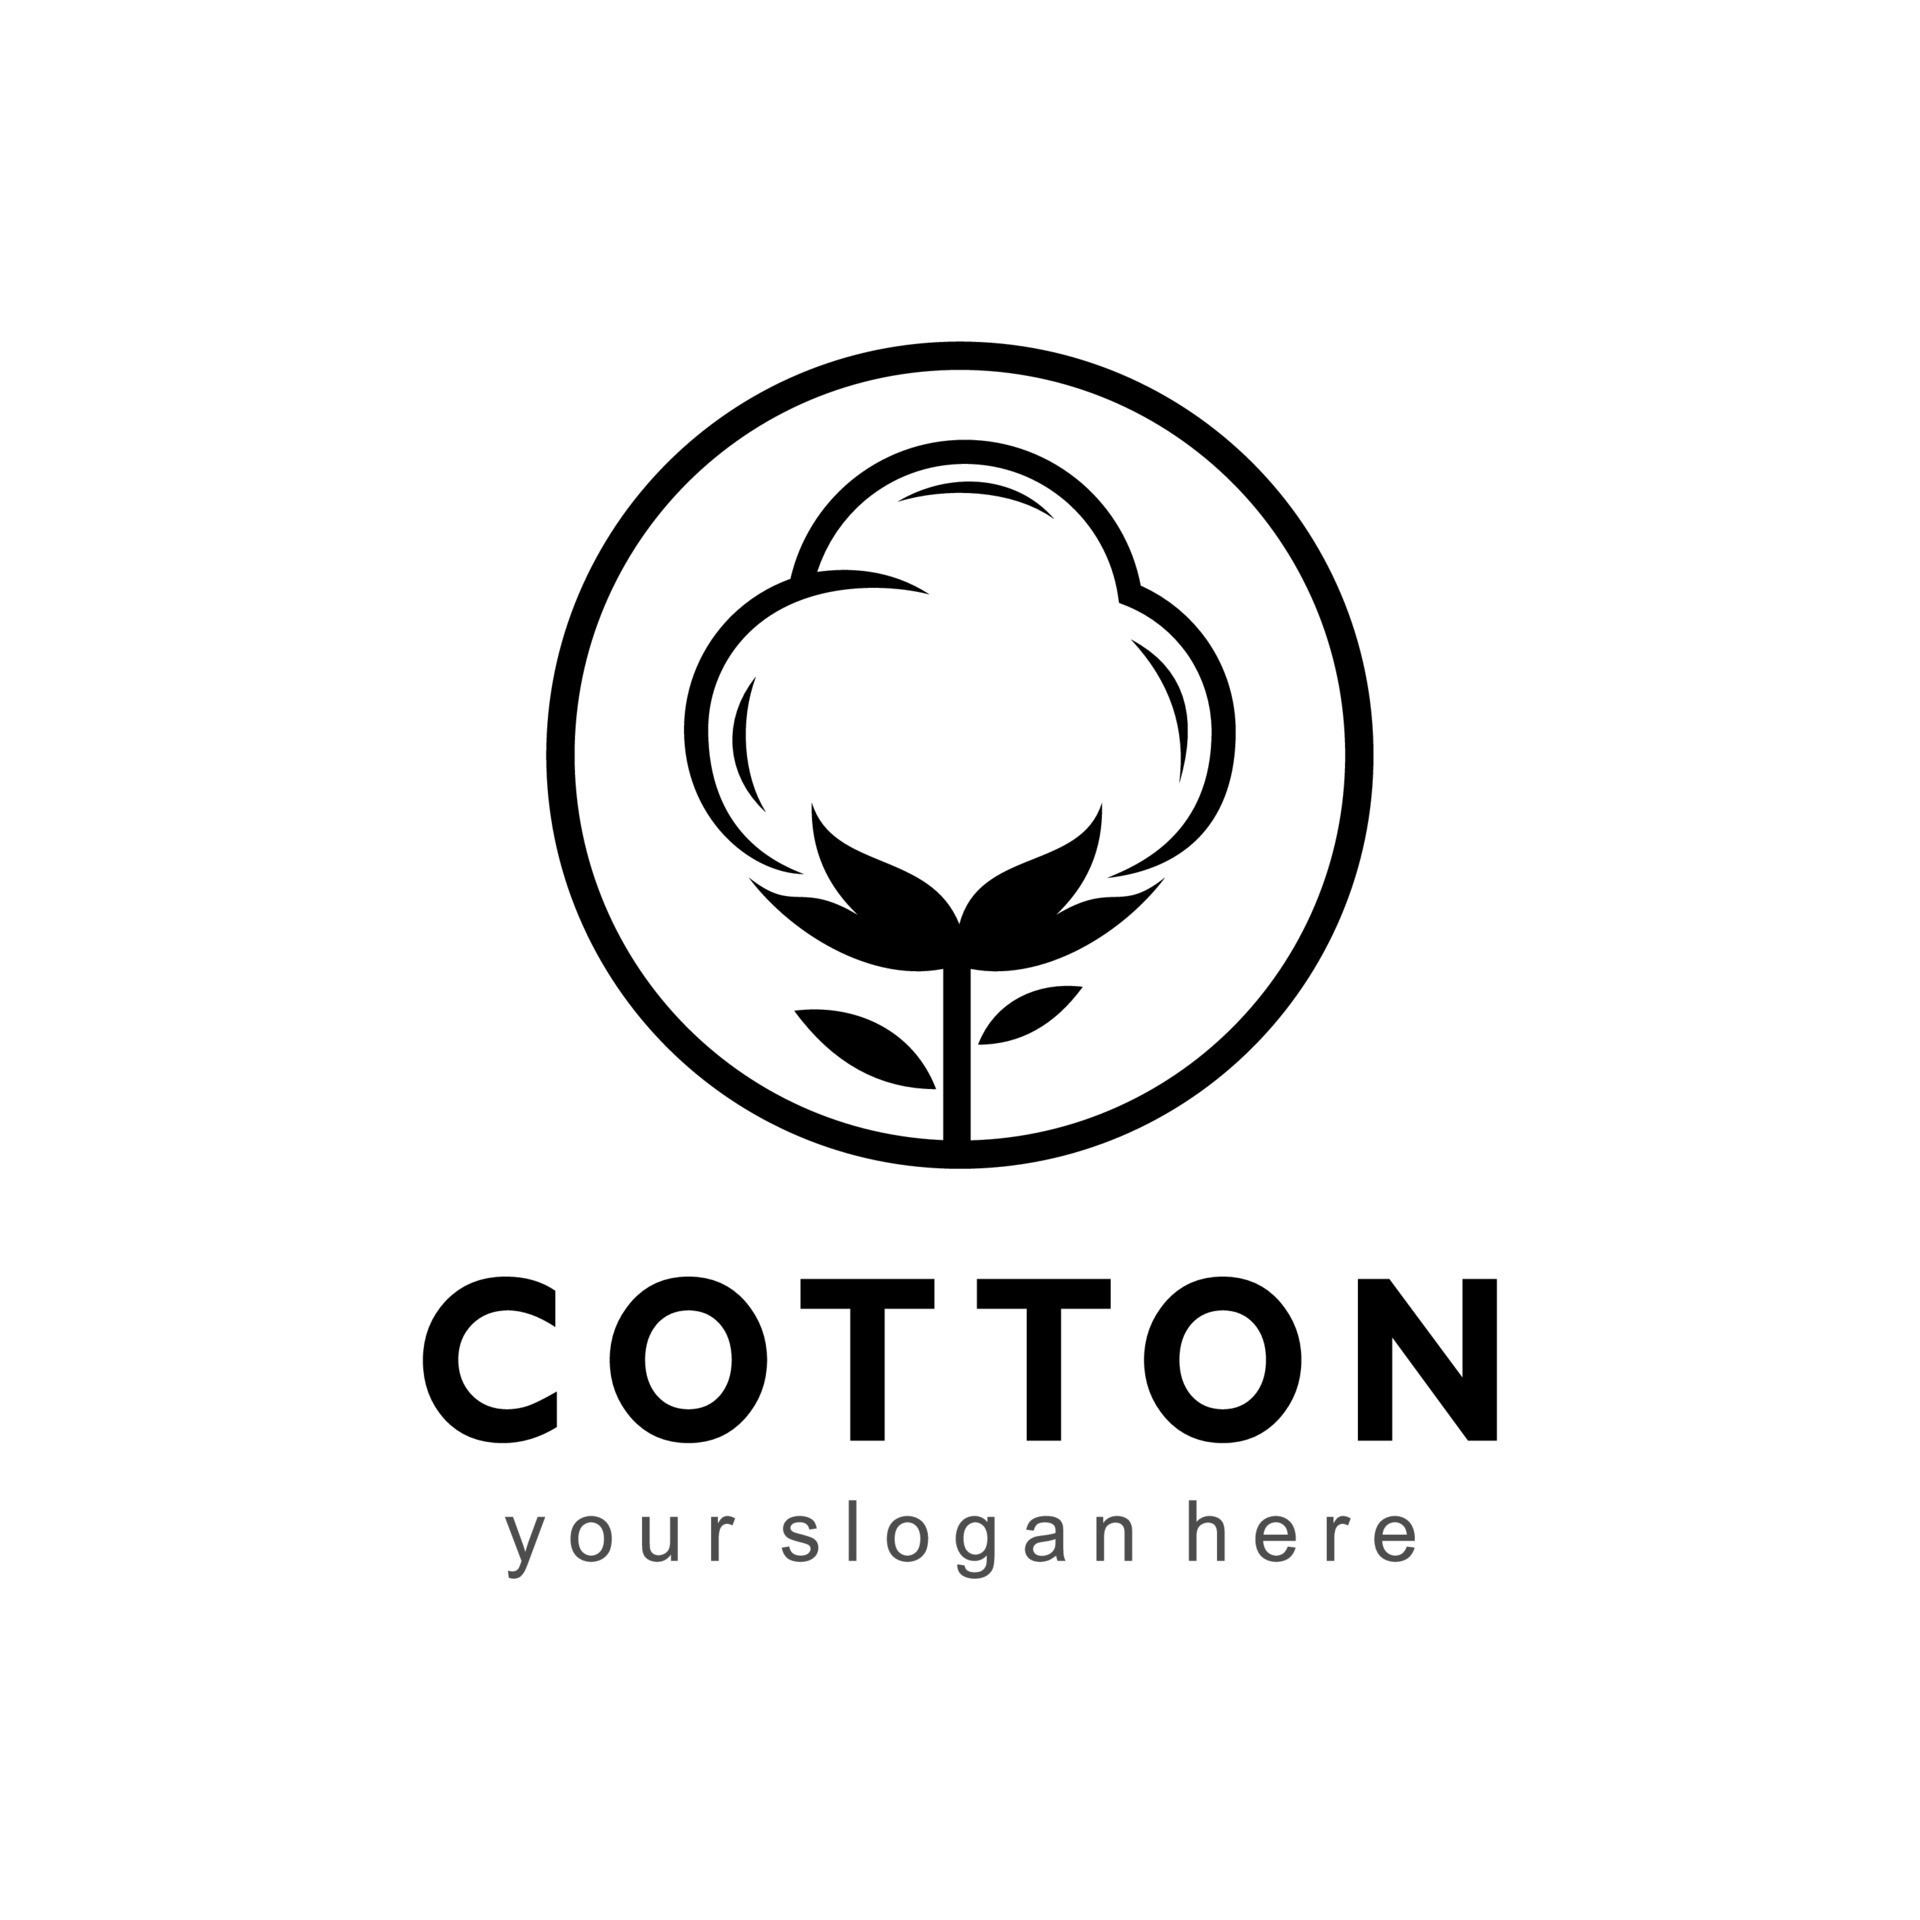 cotton vector logo 8688097 Vector Art at Vecteezy